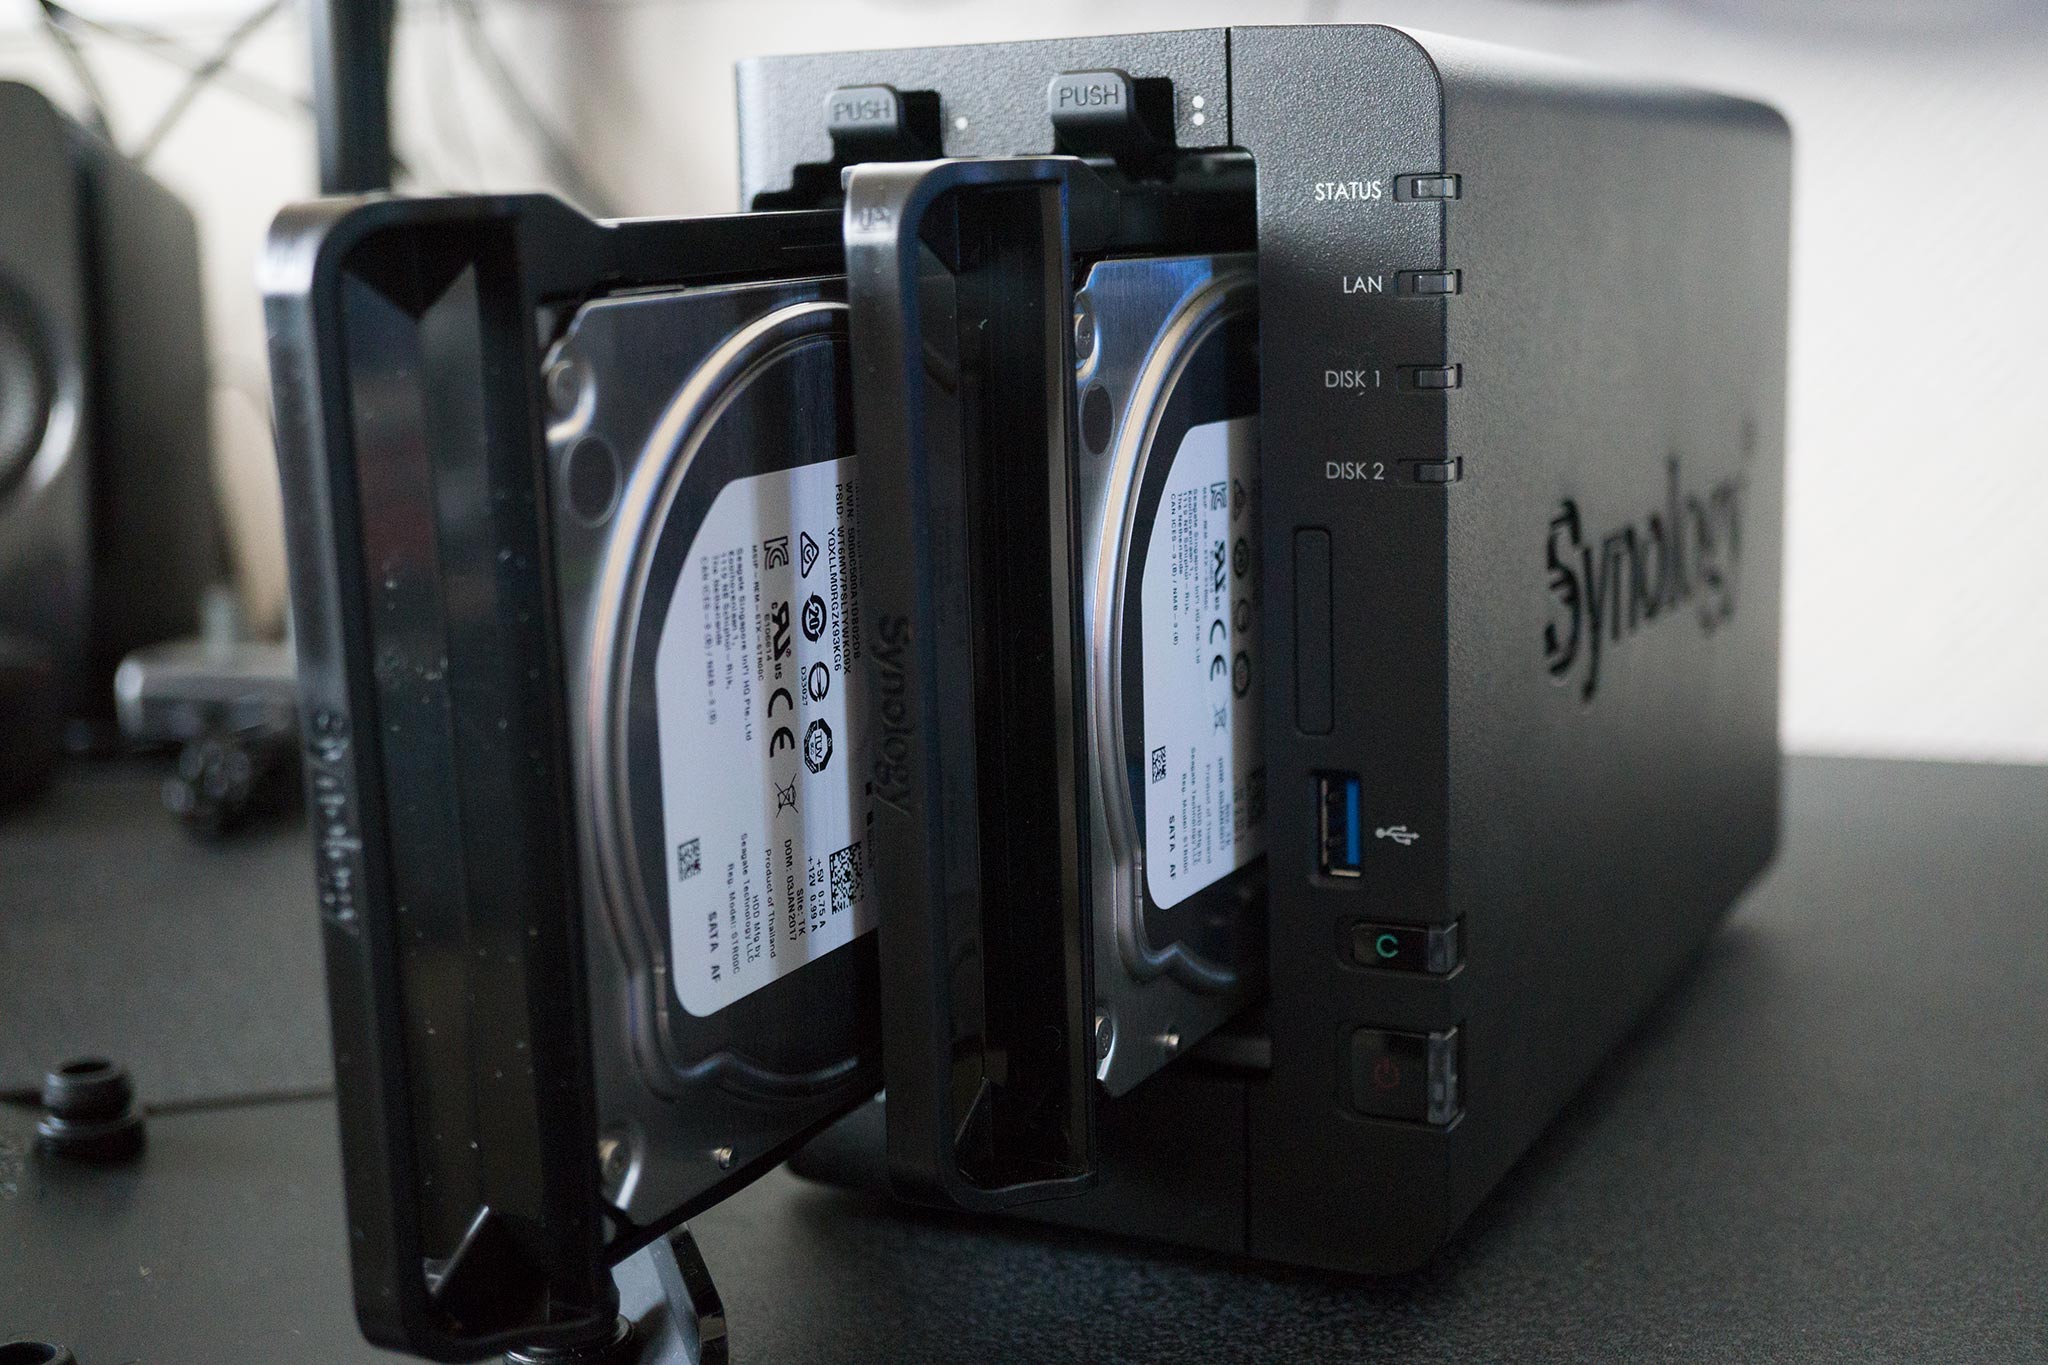 Dwelling Strålende renhed Best Synology DS218+ compatible hard drives | Windows Central